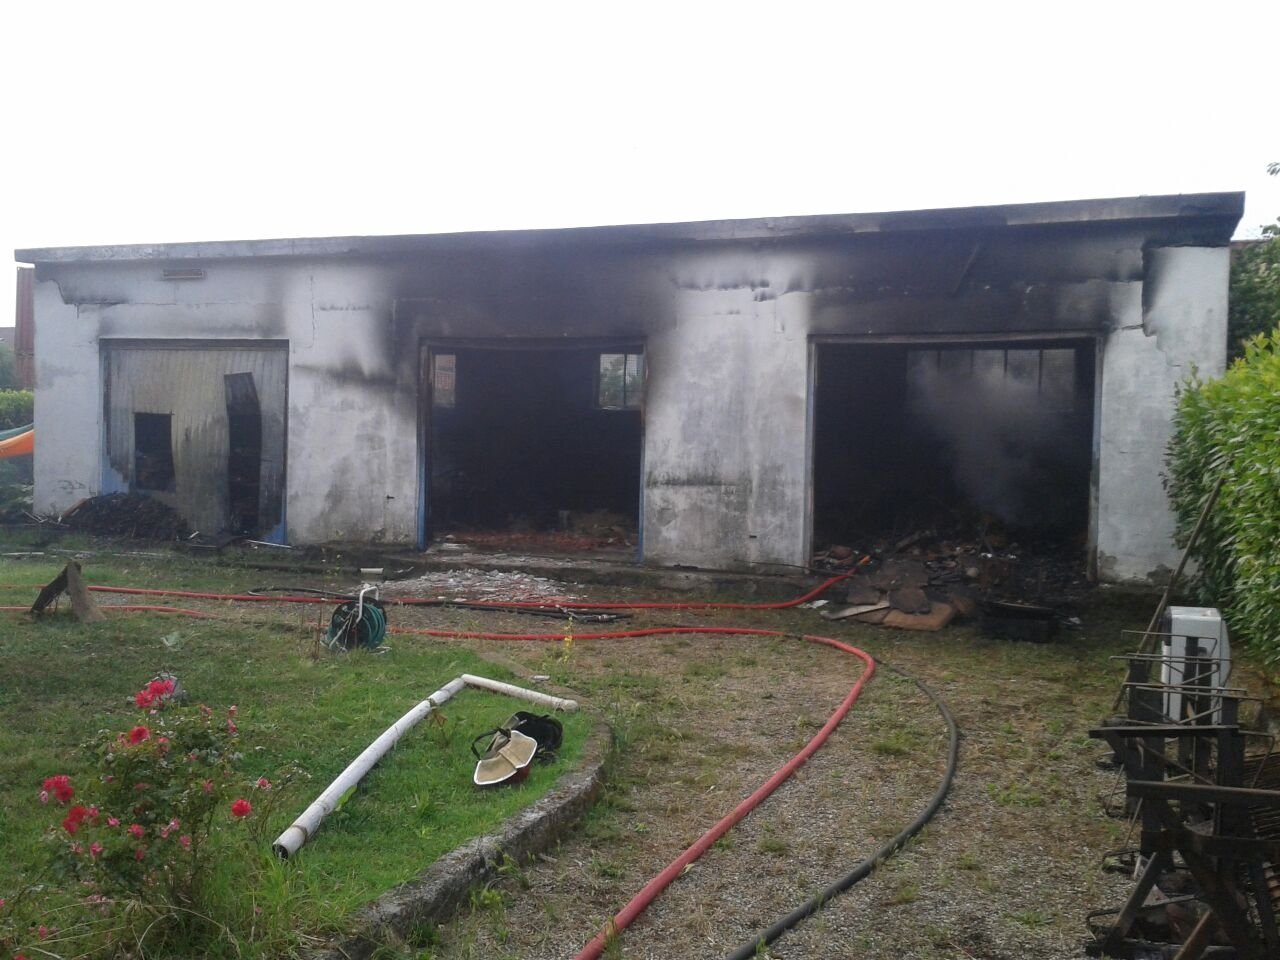 Violento incendio in un deposito a Vignole Borbera